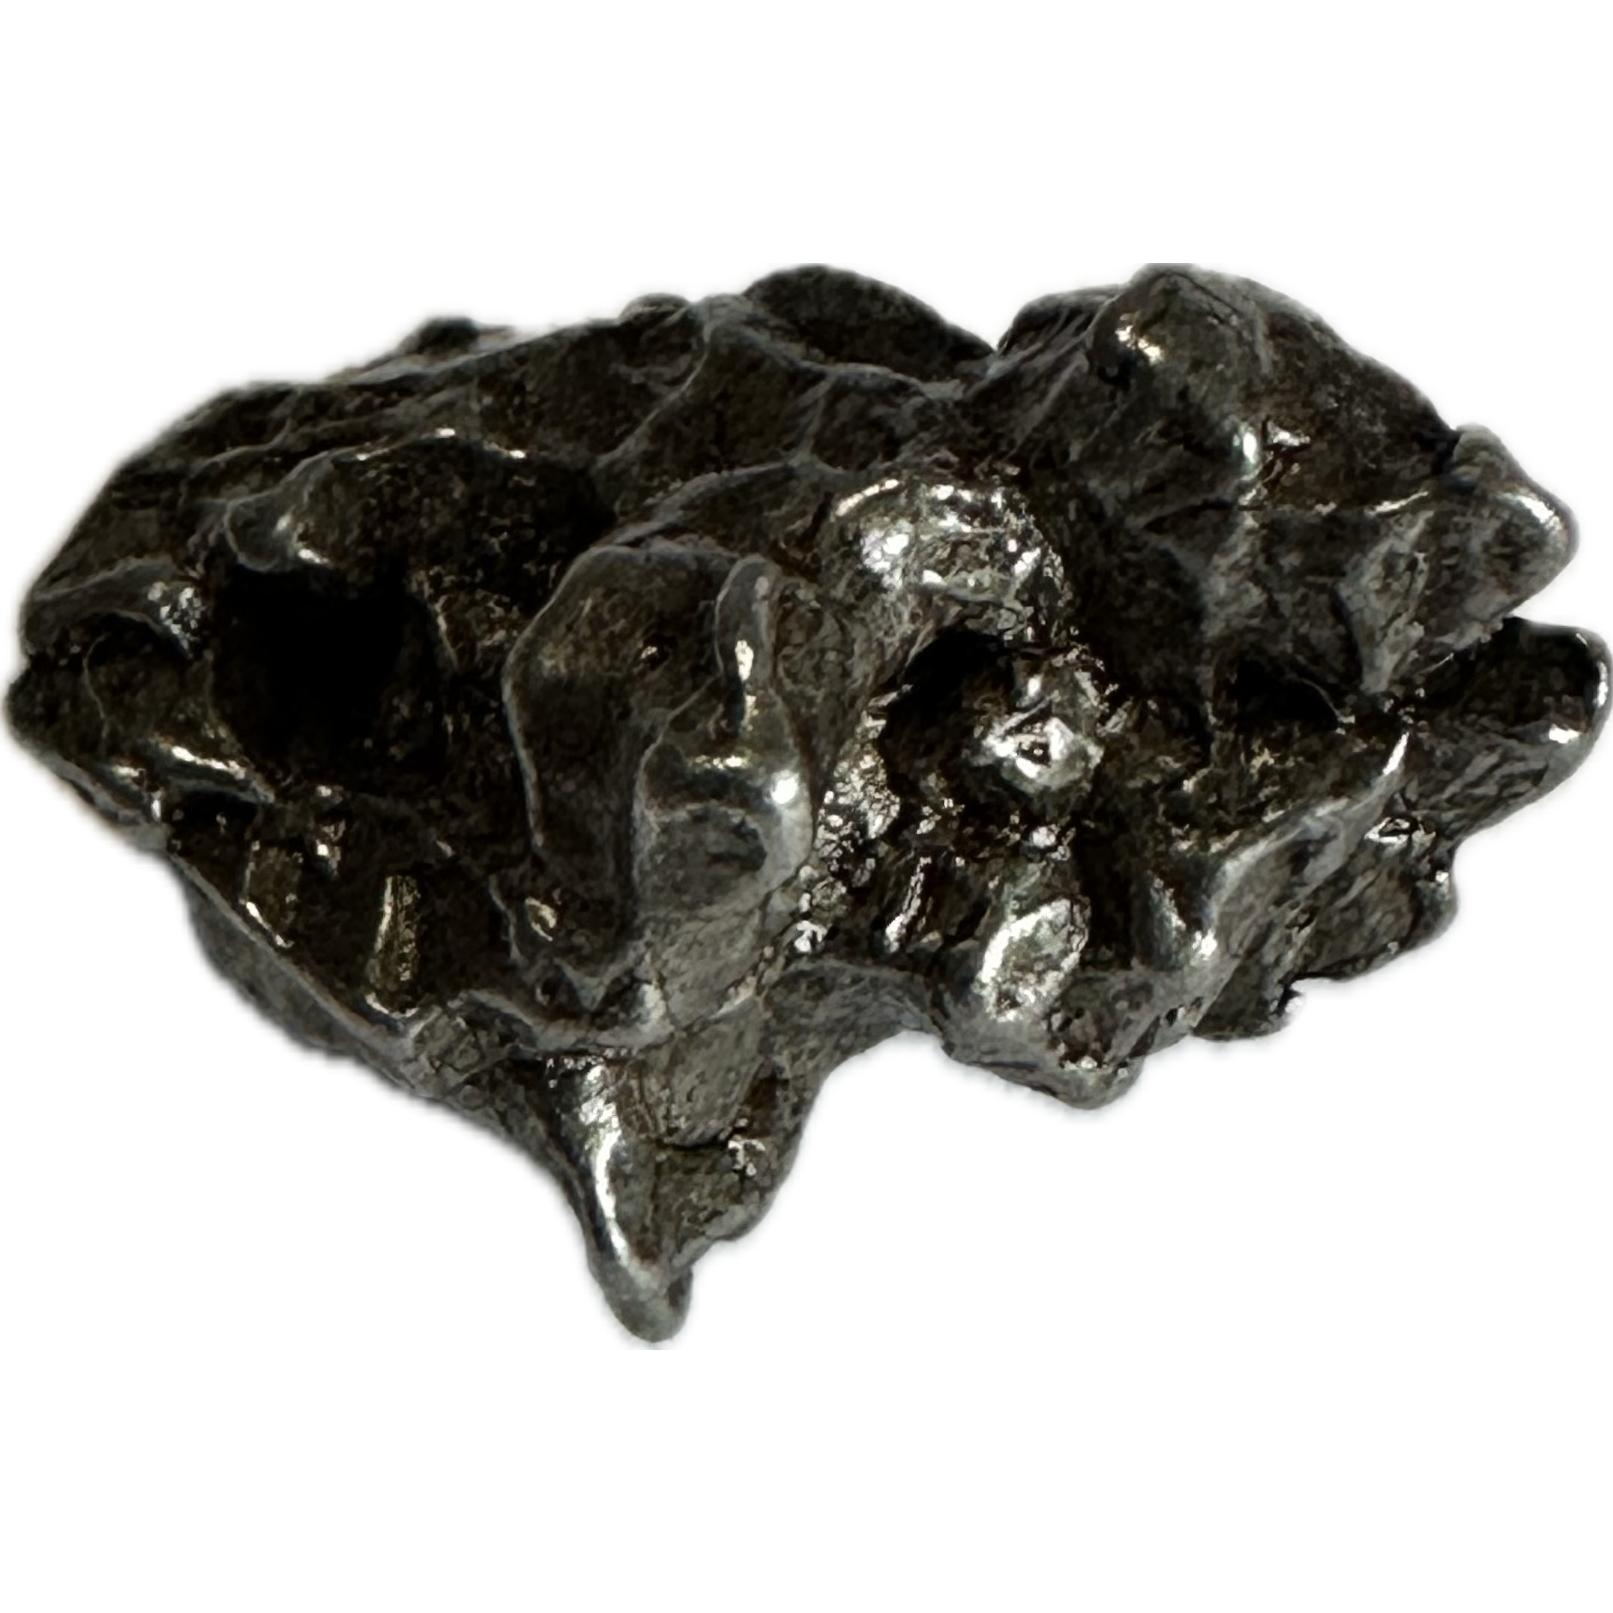 Campo del Cielo meteorite, Argentina, 6.28g, Value collectible Prehistoric Online